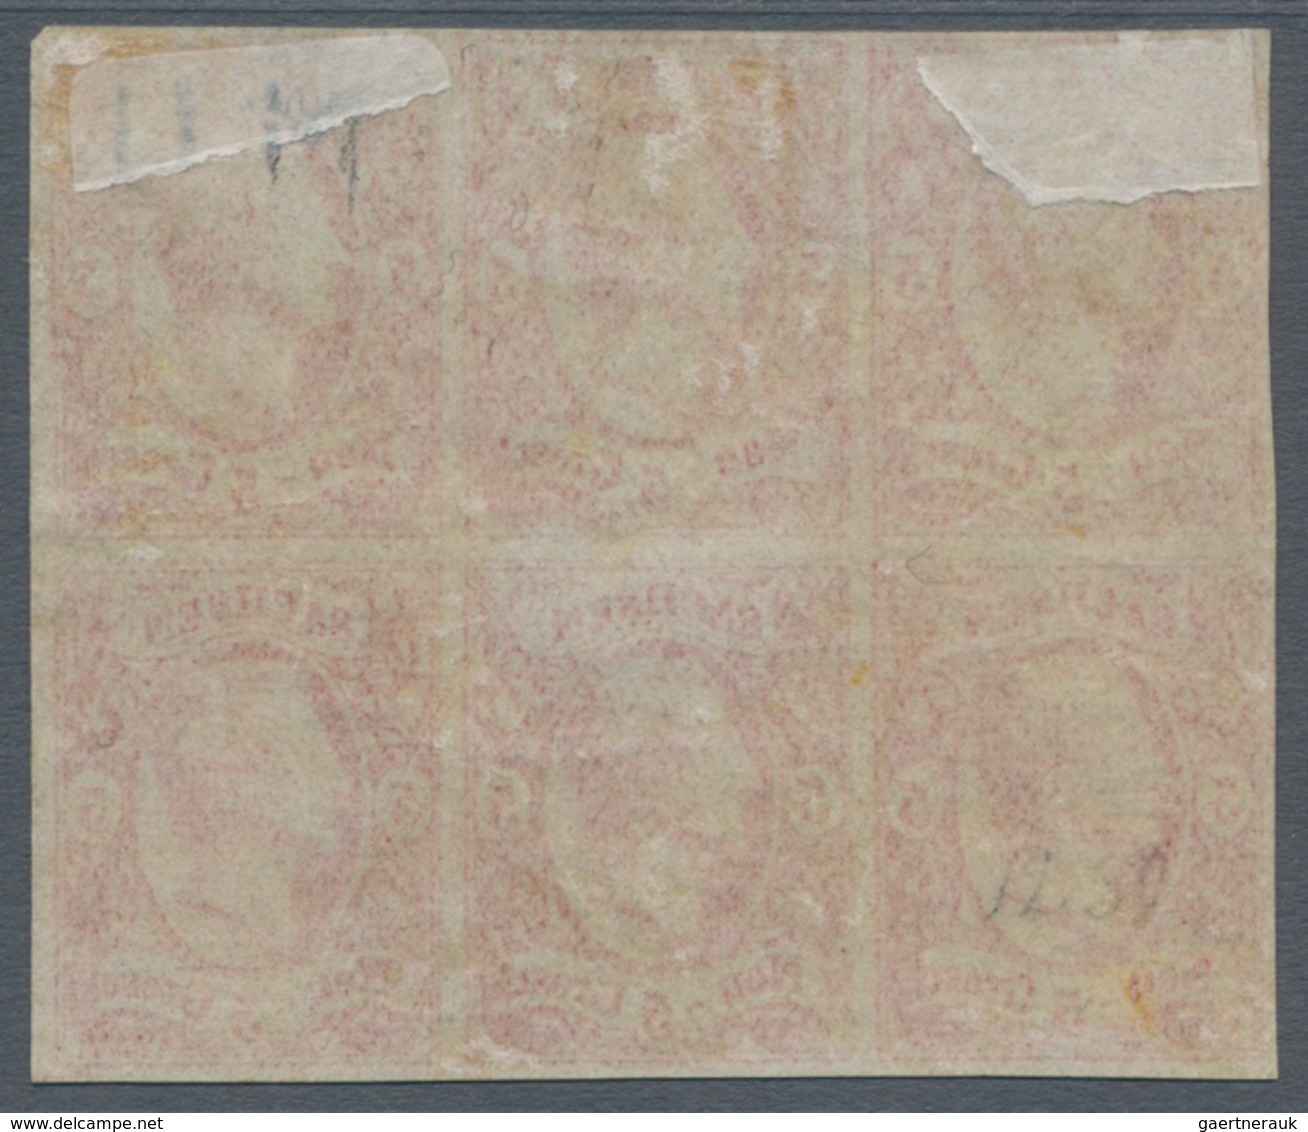 Sachsen - Marken Und Briefe: 1855, König Johann 5 Ngr. Ziegelrot, Glasiges Papier Im Ungebrauchten S - Saxony